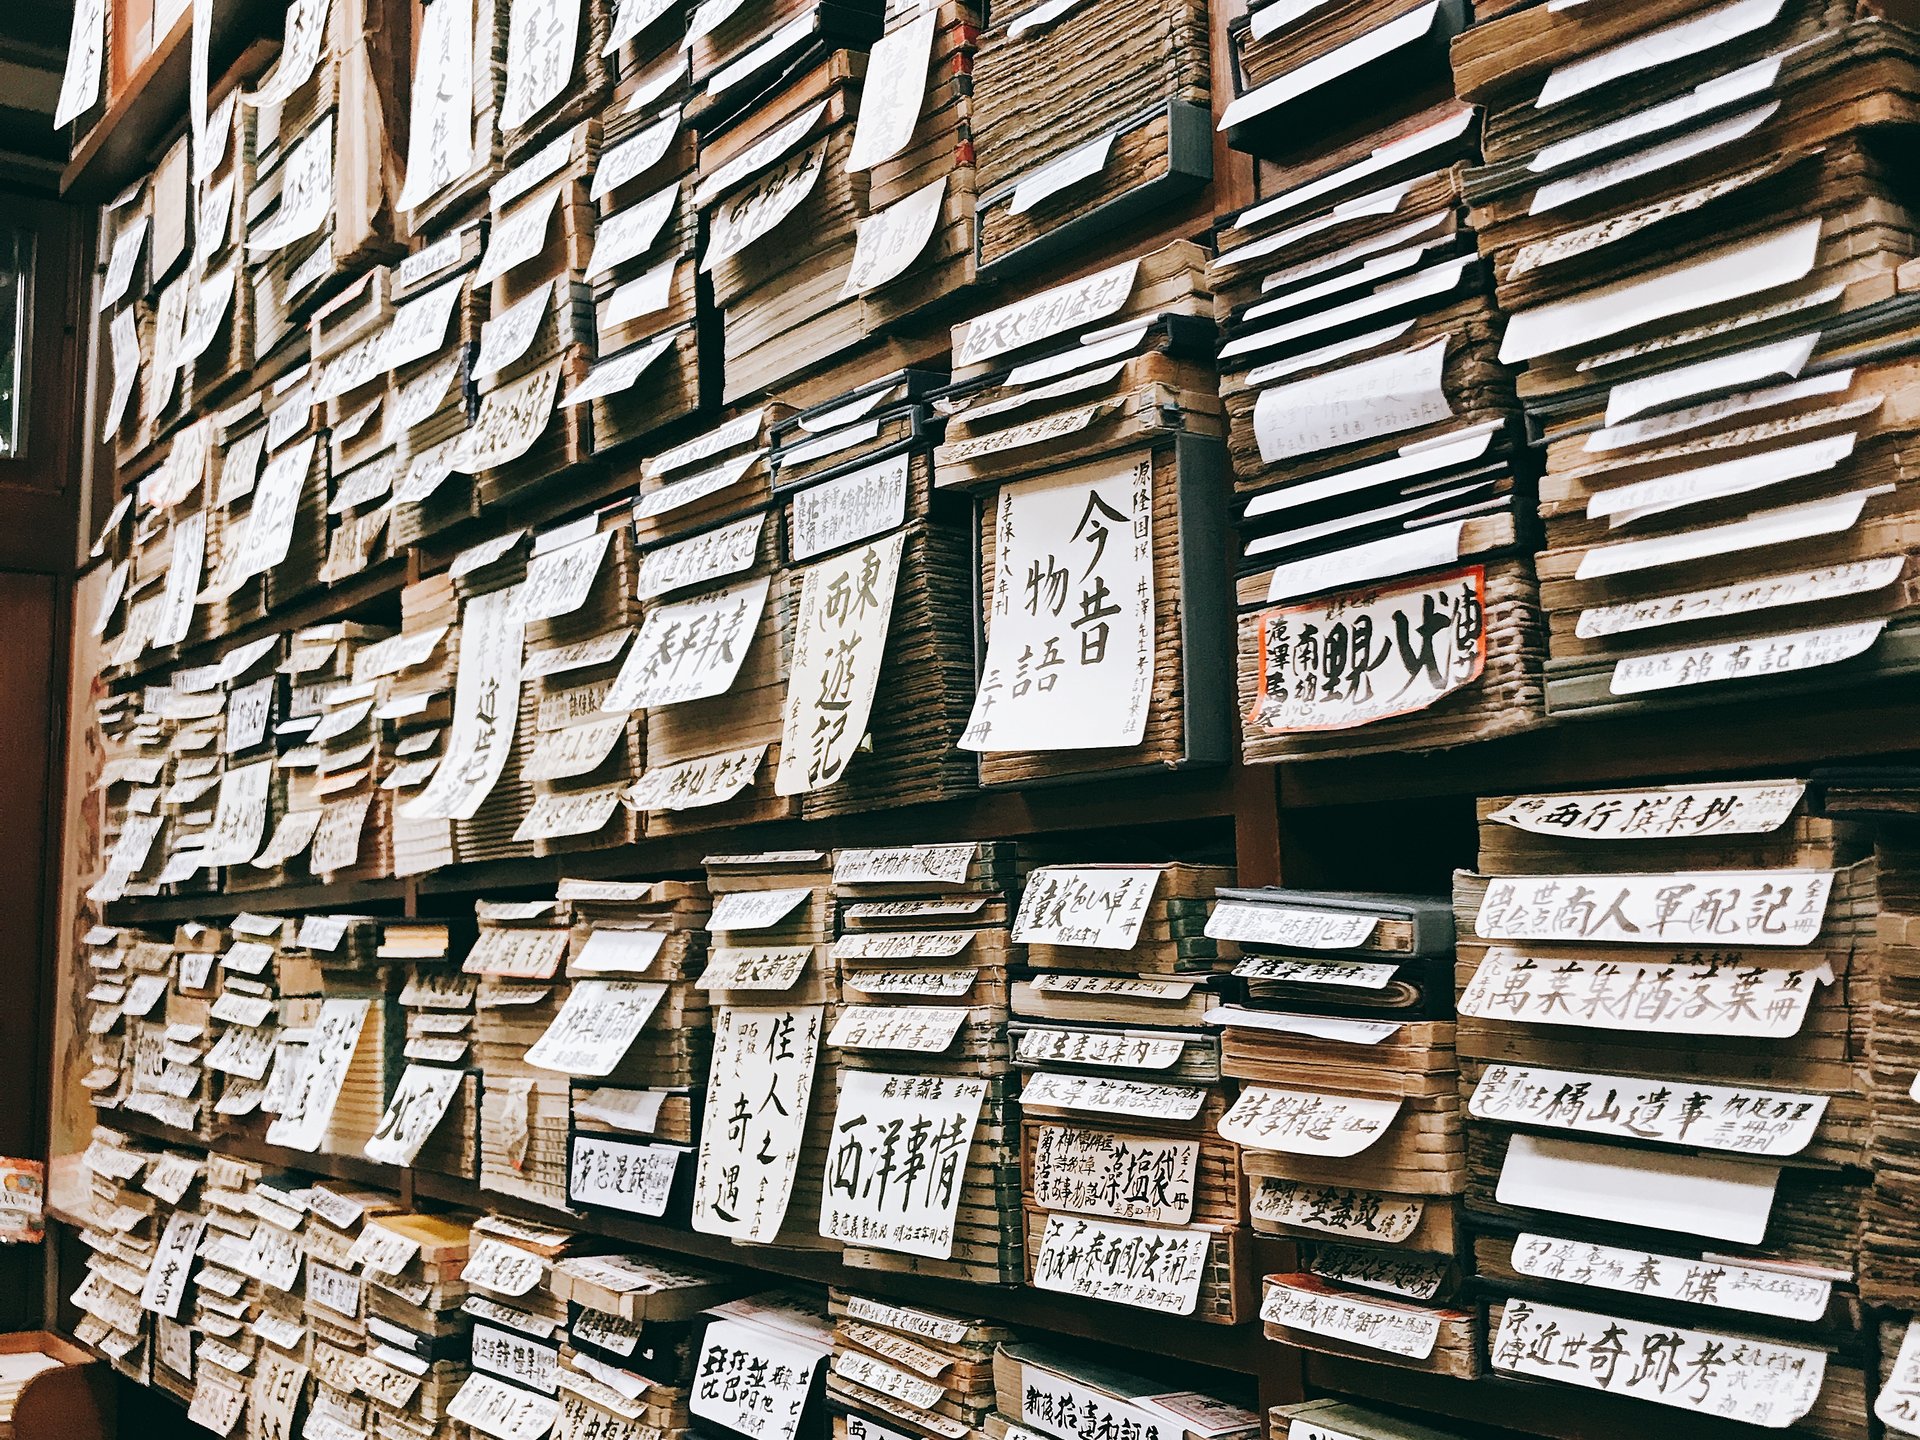 東京都内で変わったデートをしよう！
本のまち神保町で古書店めぐり。